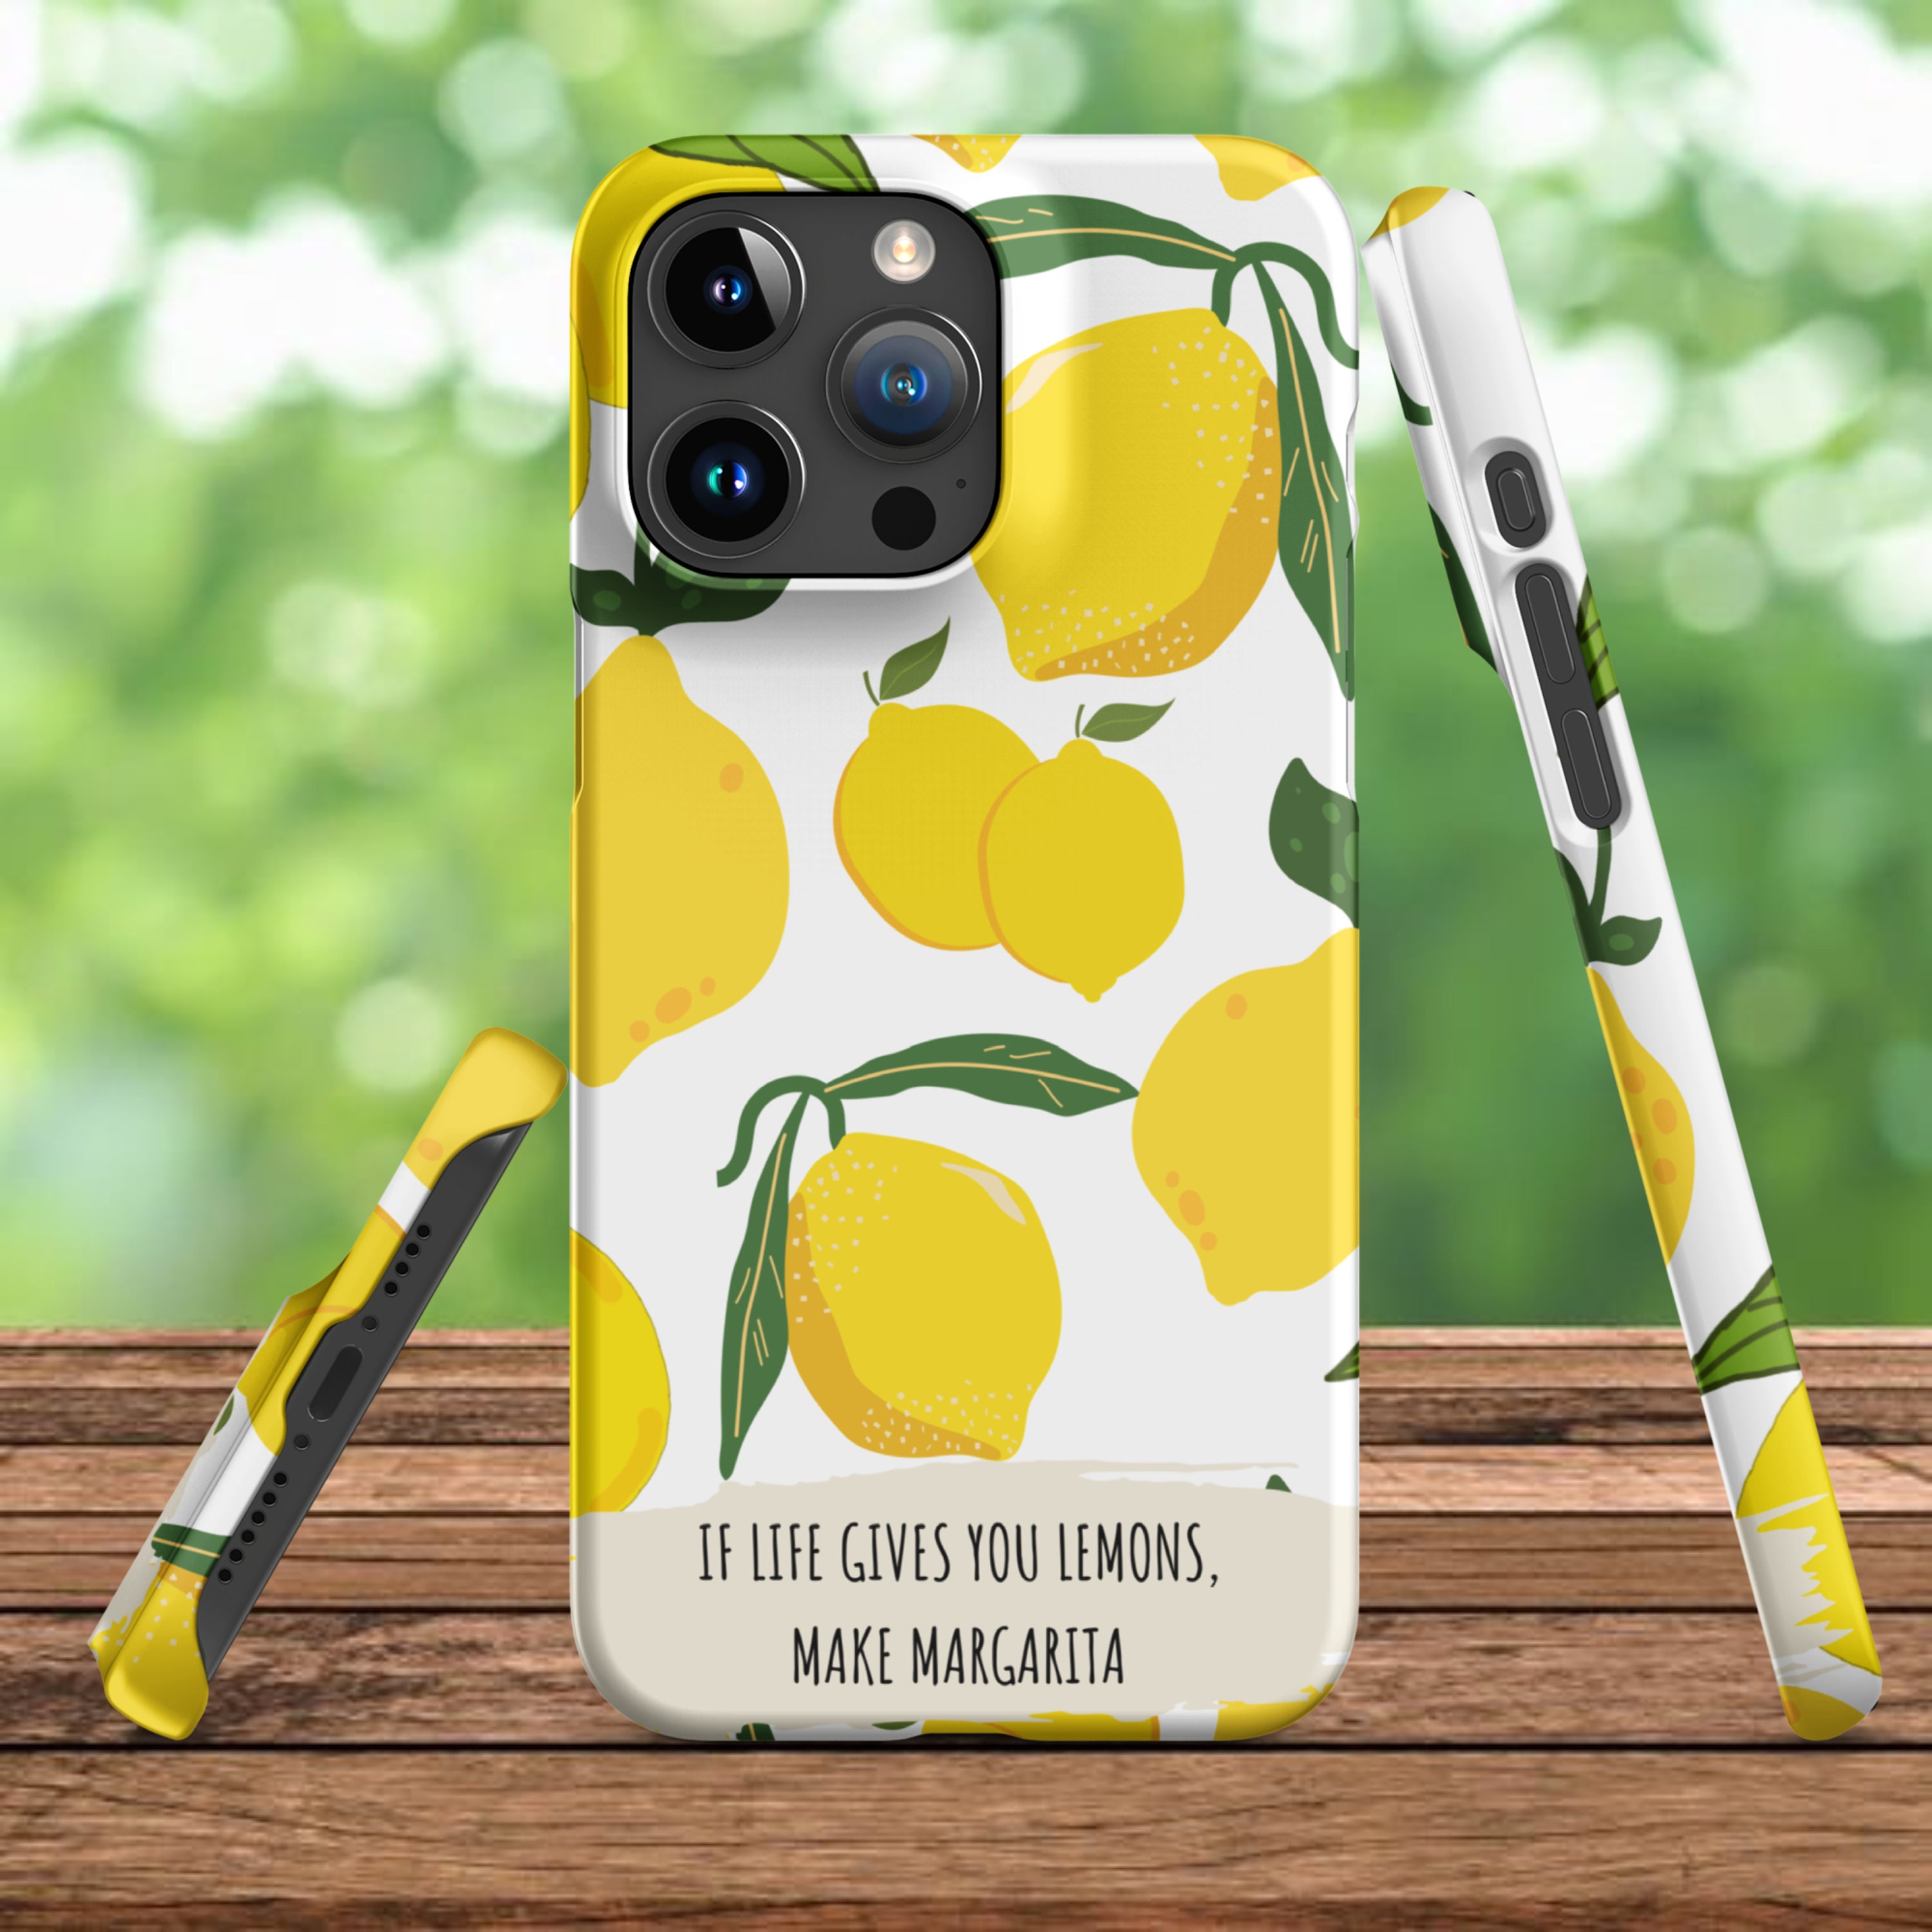  Inspired Cases - Funda con textura 3D para iPhone 11 Pro Max -  Funda protectora de goma para iPhone 11 Pro Max de Apple - Billete de 100  dólares : Electrónica